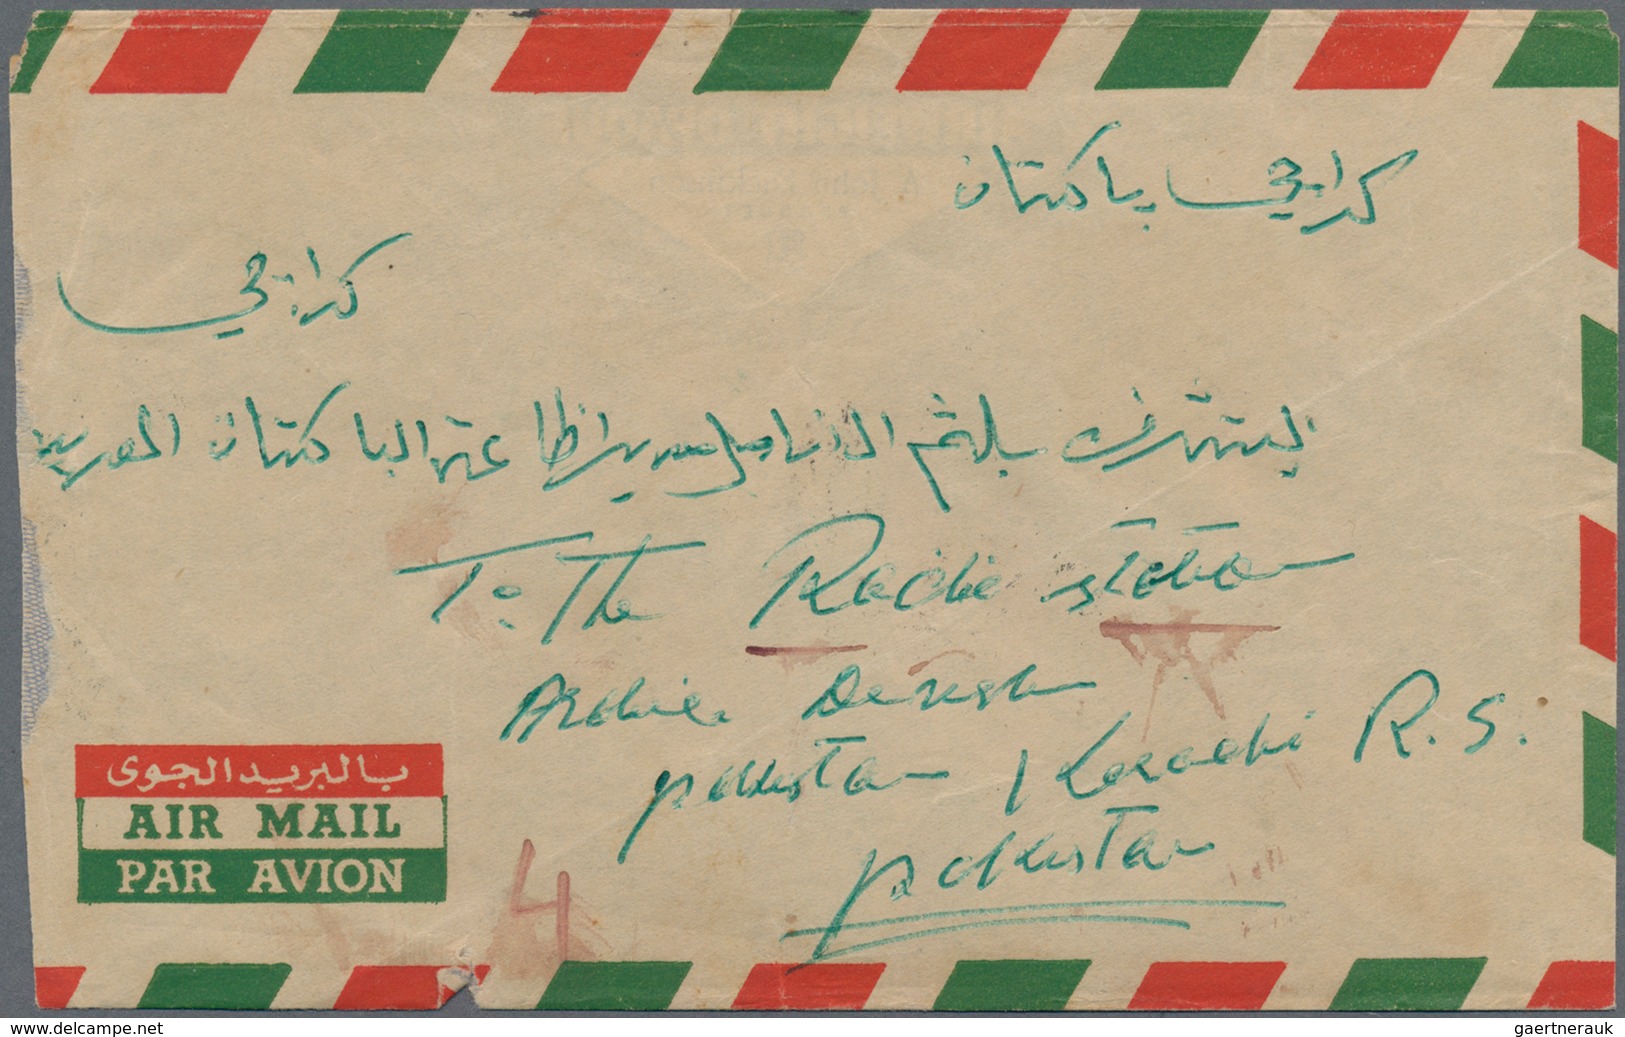 Katar / Qatar: 1954 Airmail Cover From Qatar To Karachi, Pakistan Via Bahrain, Endorsed On Reverse " - Qatar